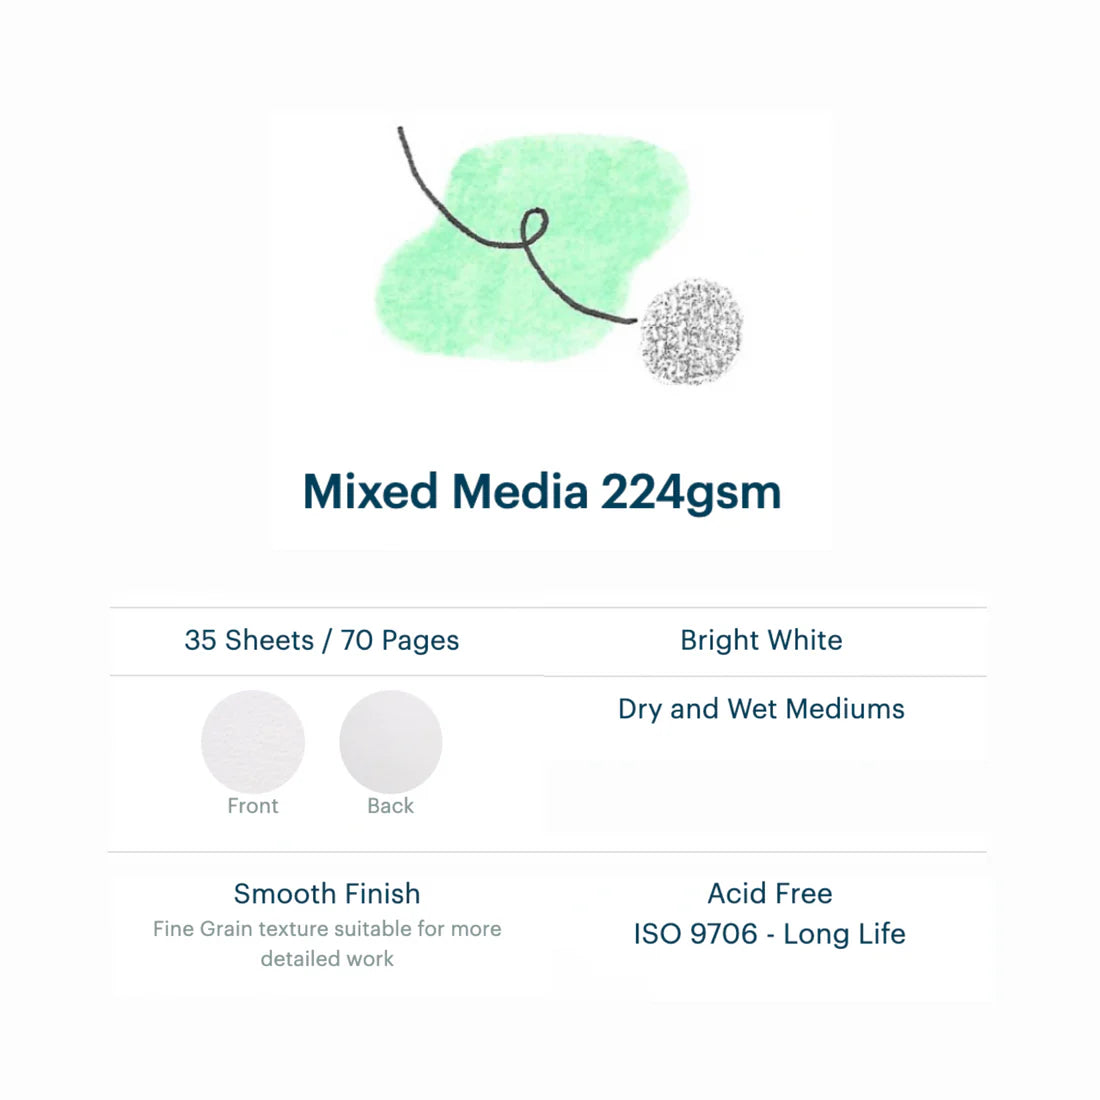 Mixed Media Sketchbook